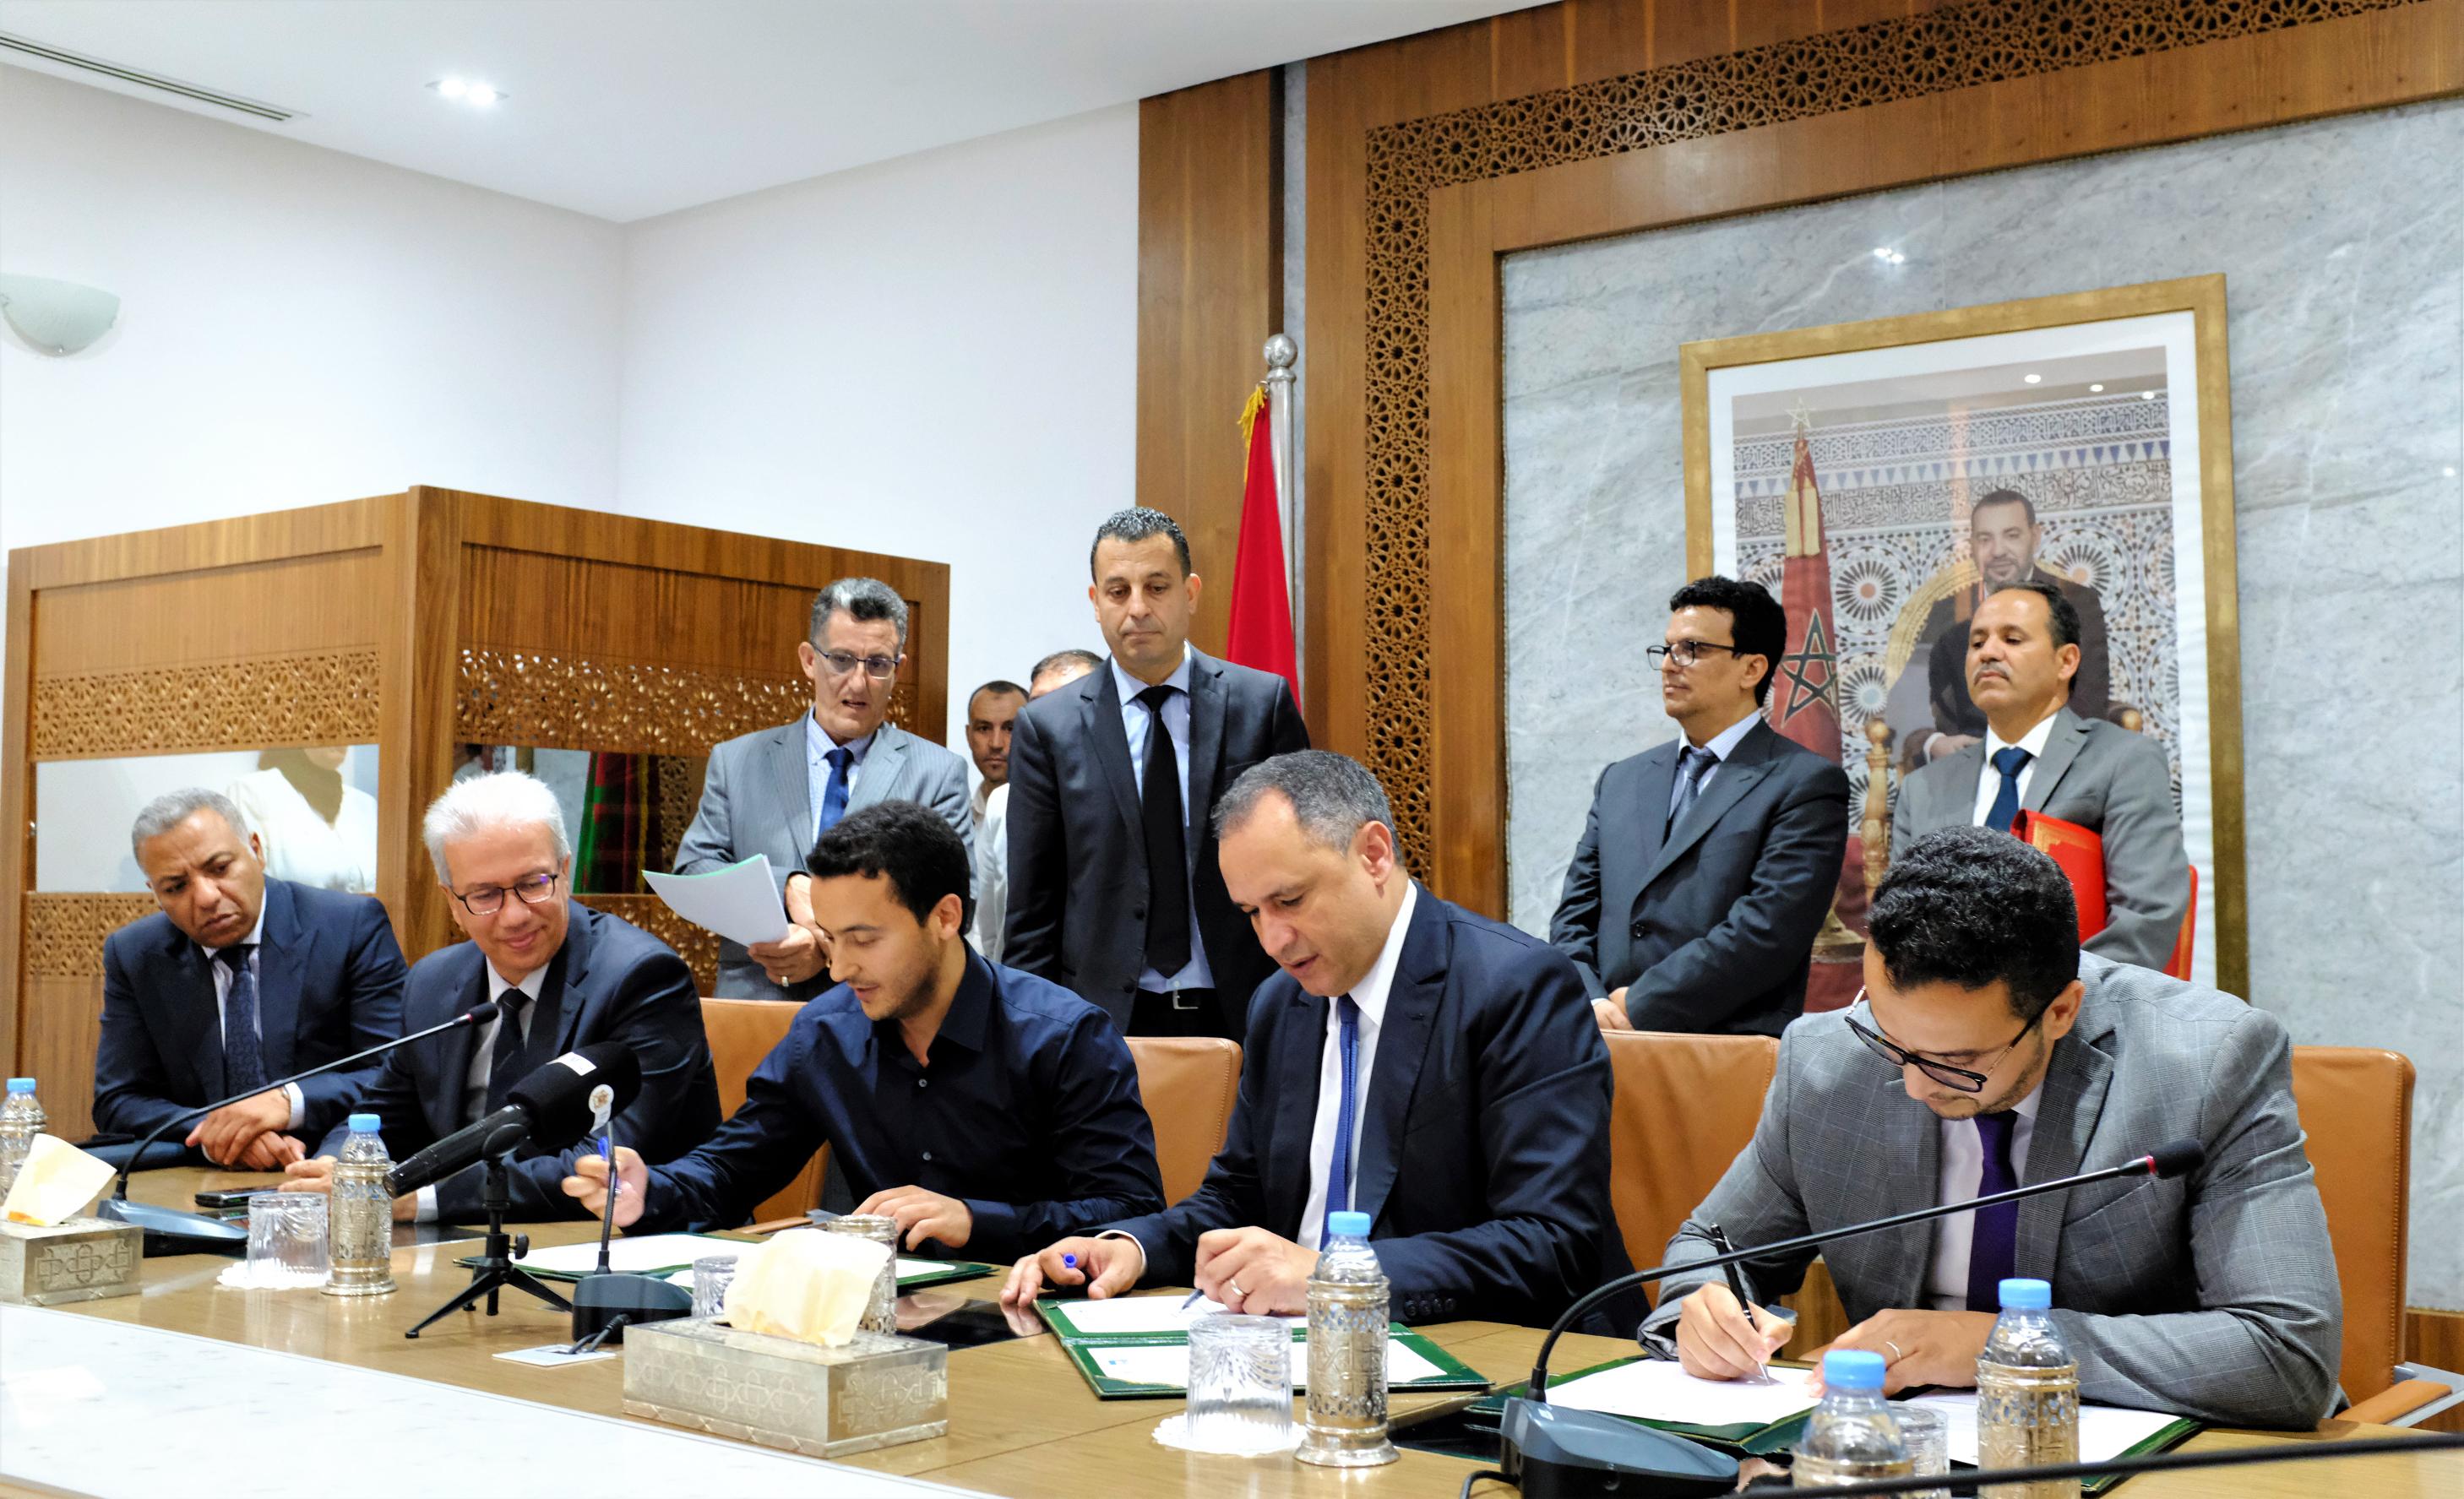 Marrakech-Safi : Mezzour signe quatre conventions d’investissement pour 191 MDH